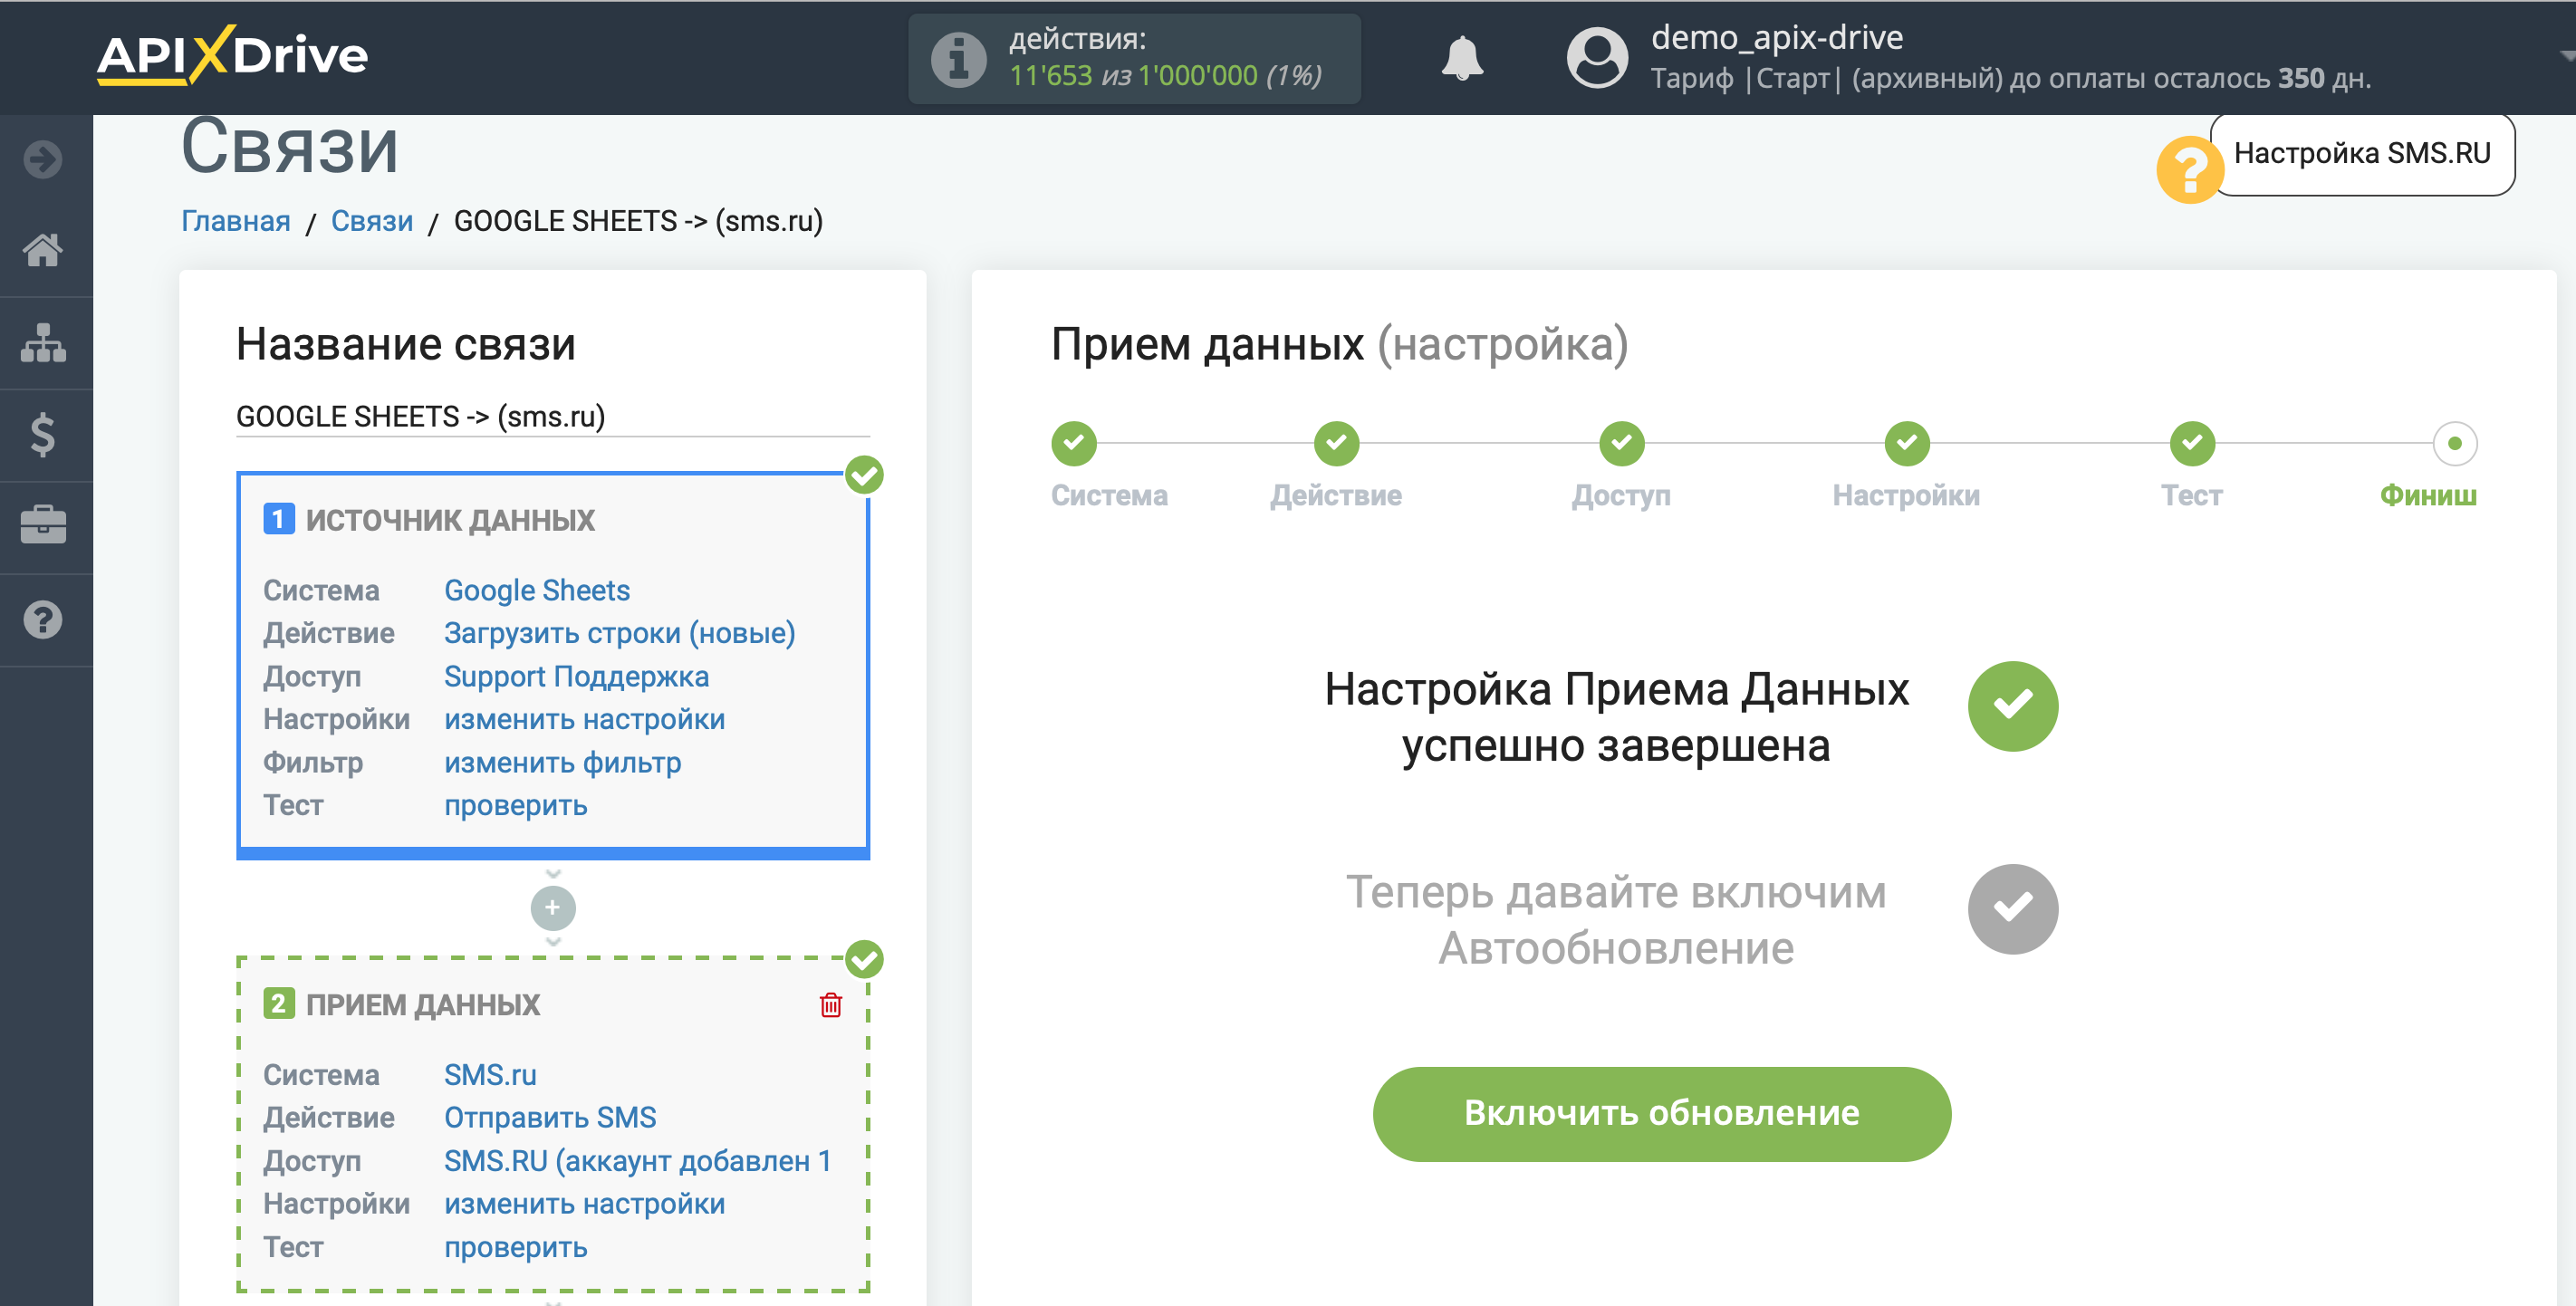 Настройка Приема данных в SMS.ru | Включение автообновления